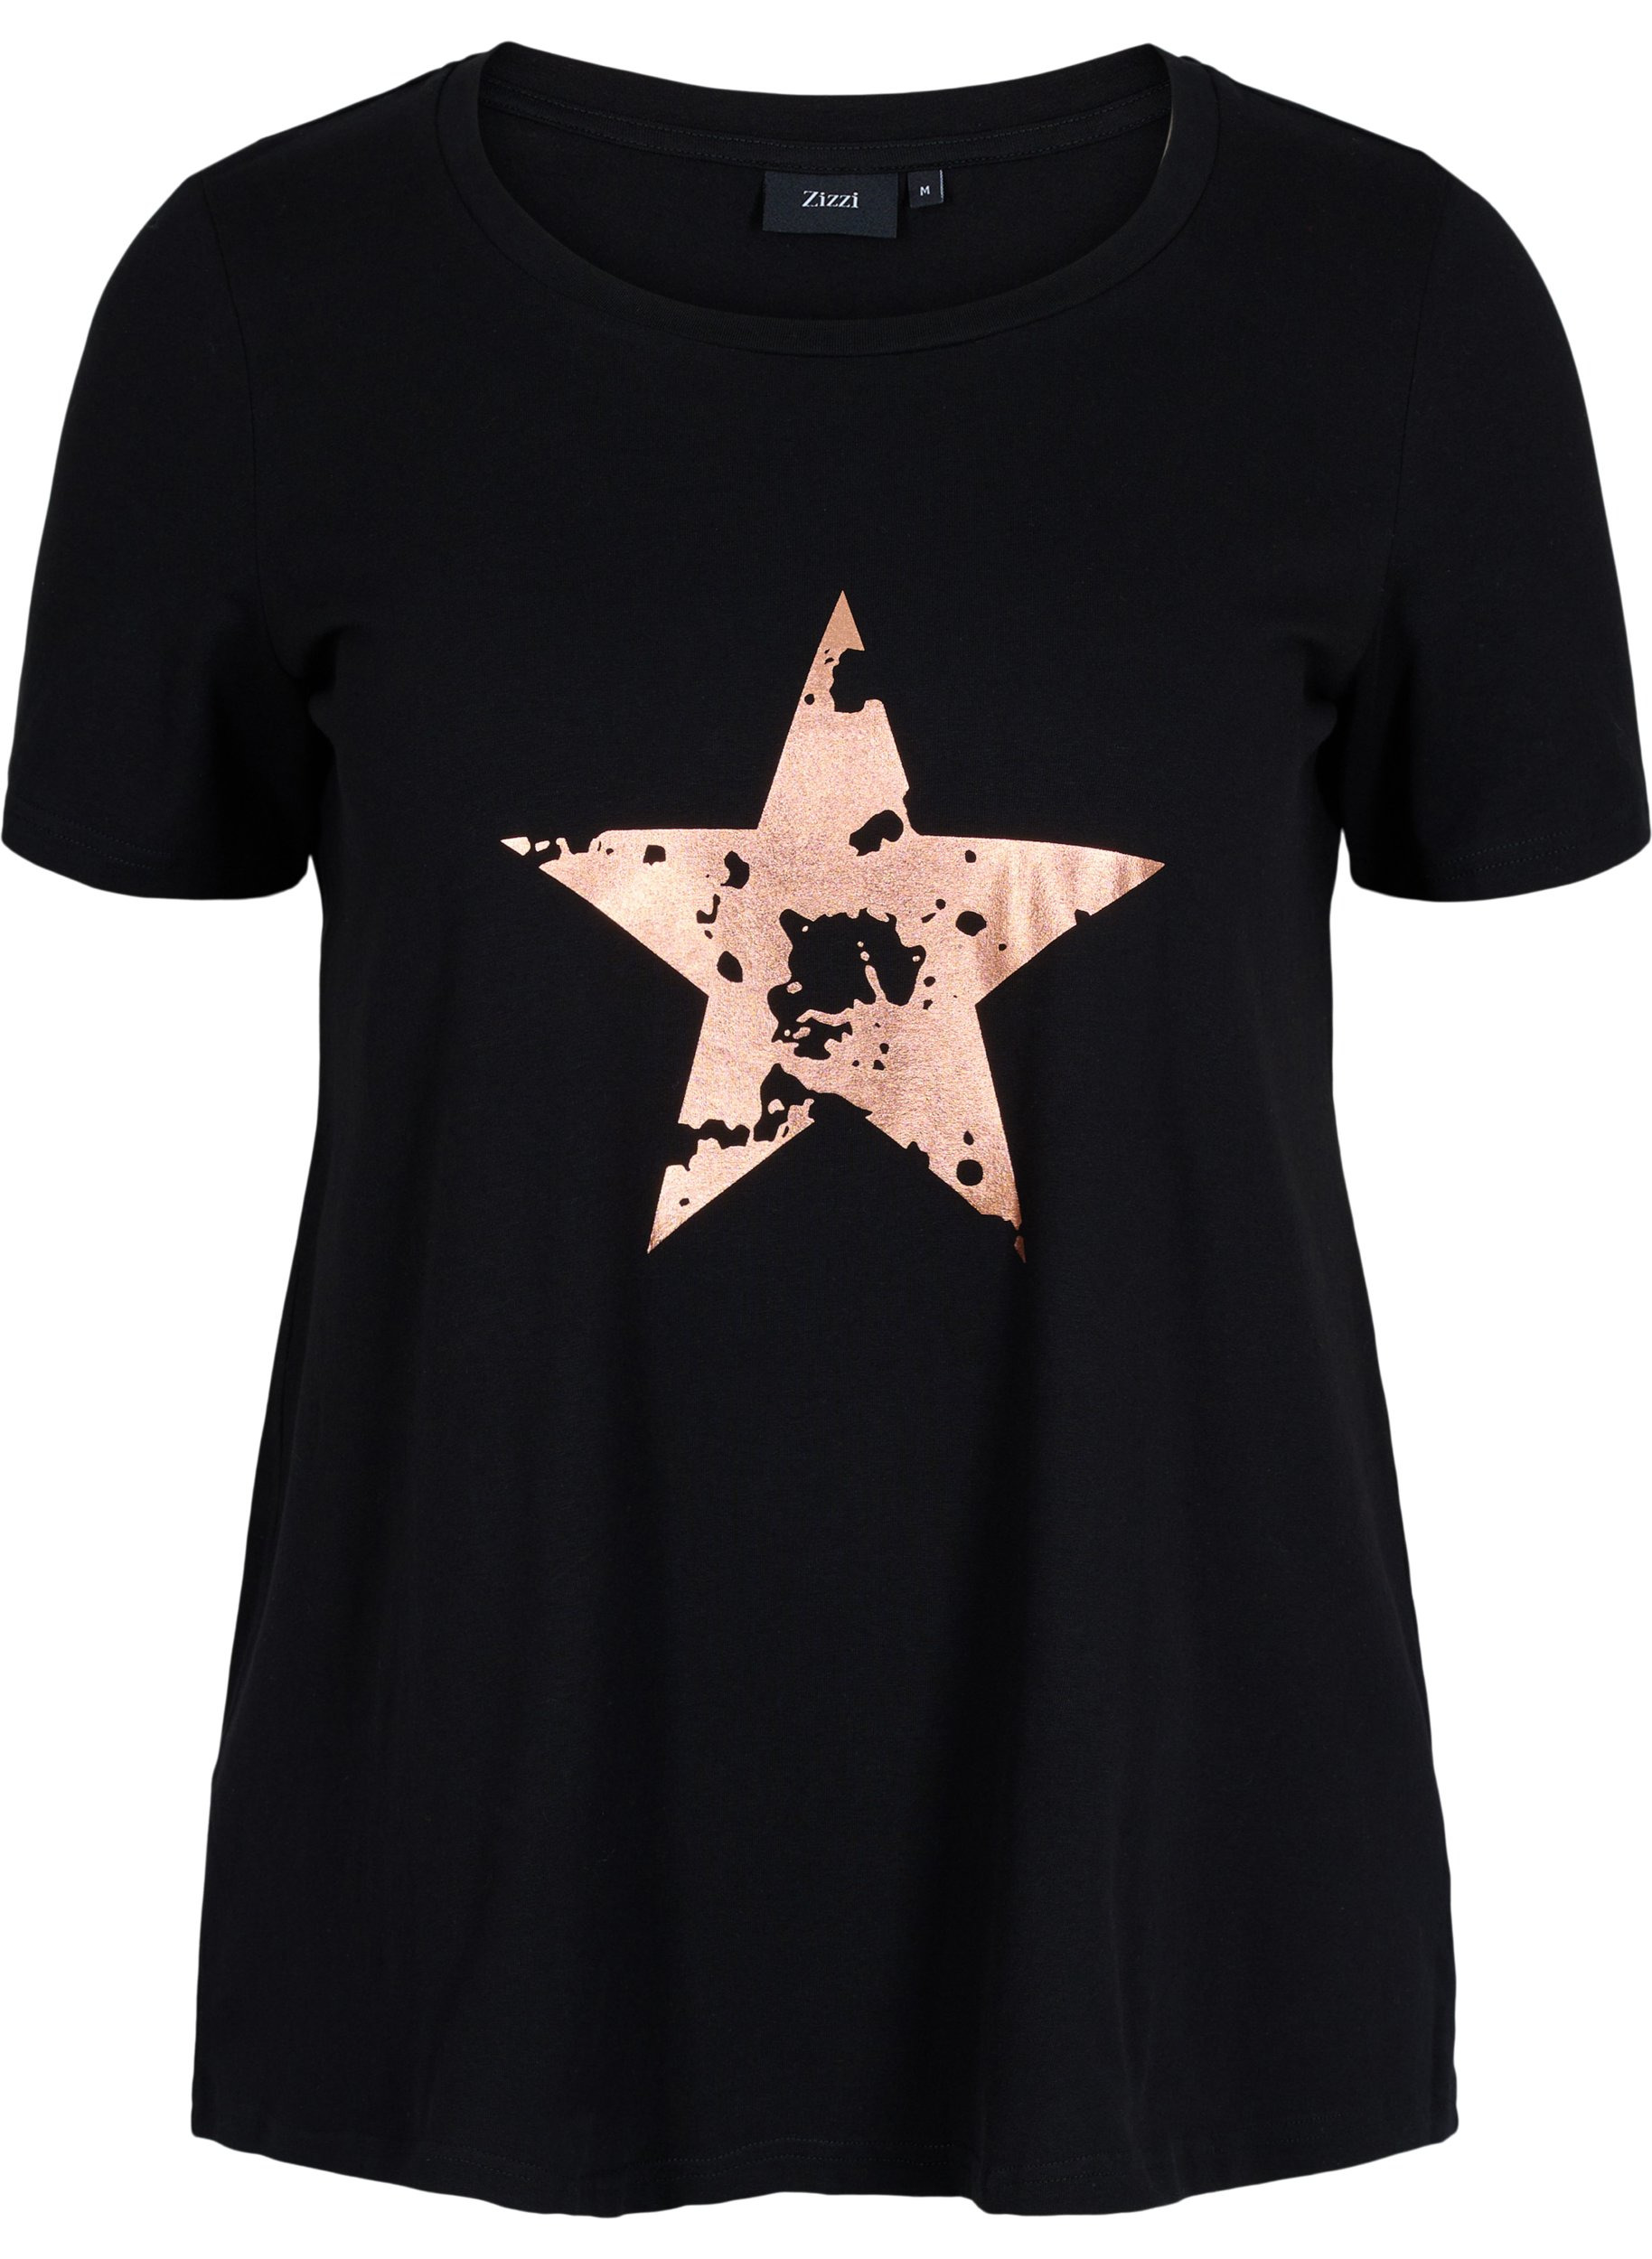 Kurzarm T-Shirt aus Baumwolle mit Aufdruck, Black w. star copper